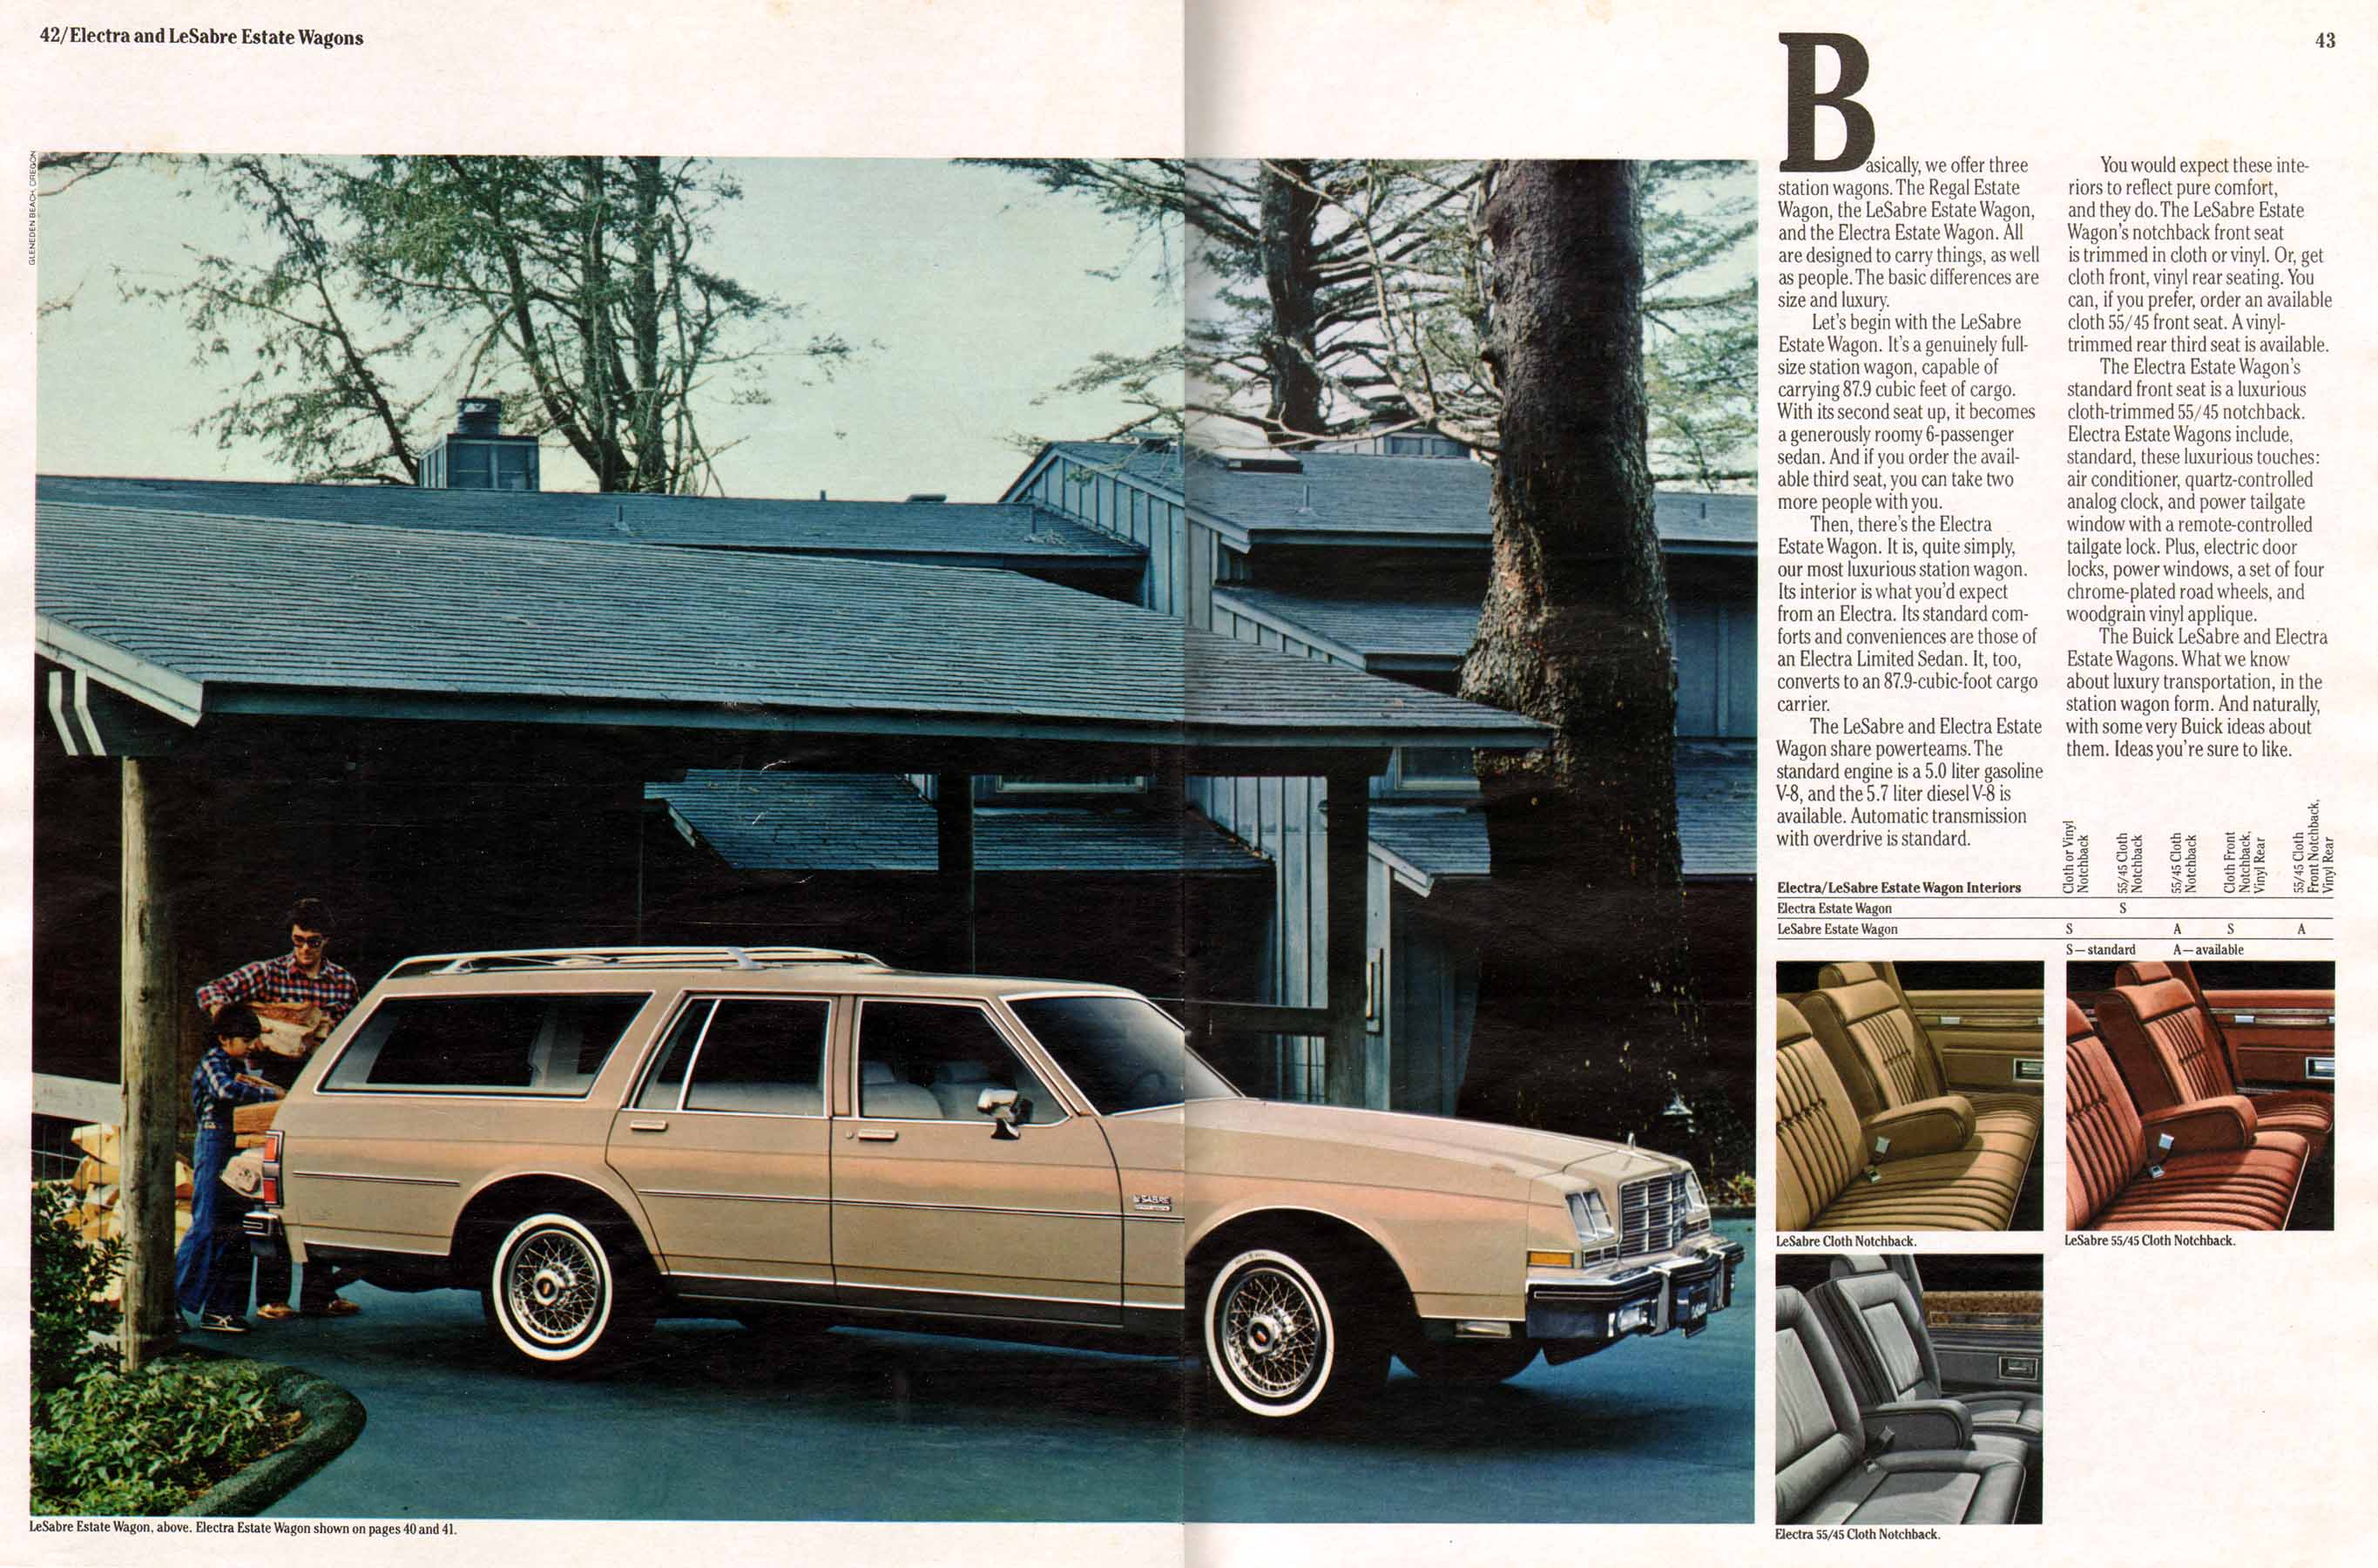 1982 Buick Full Line Prestige-42-43